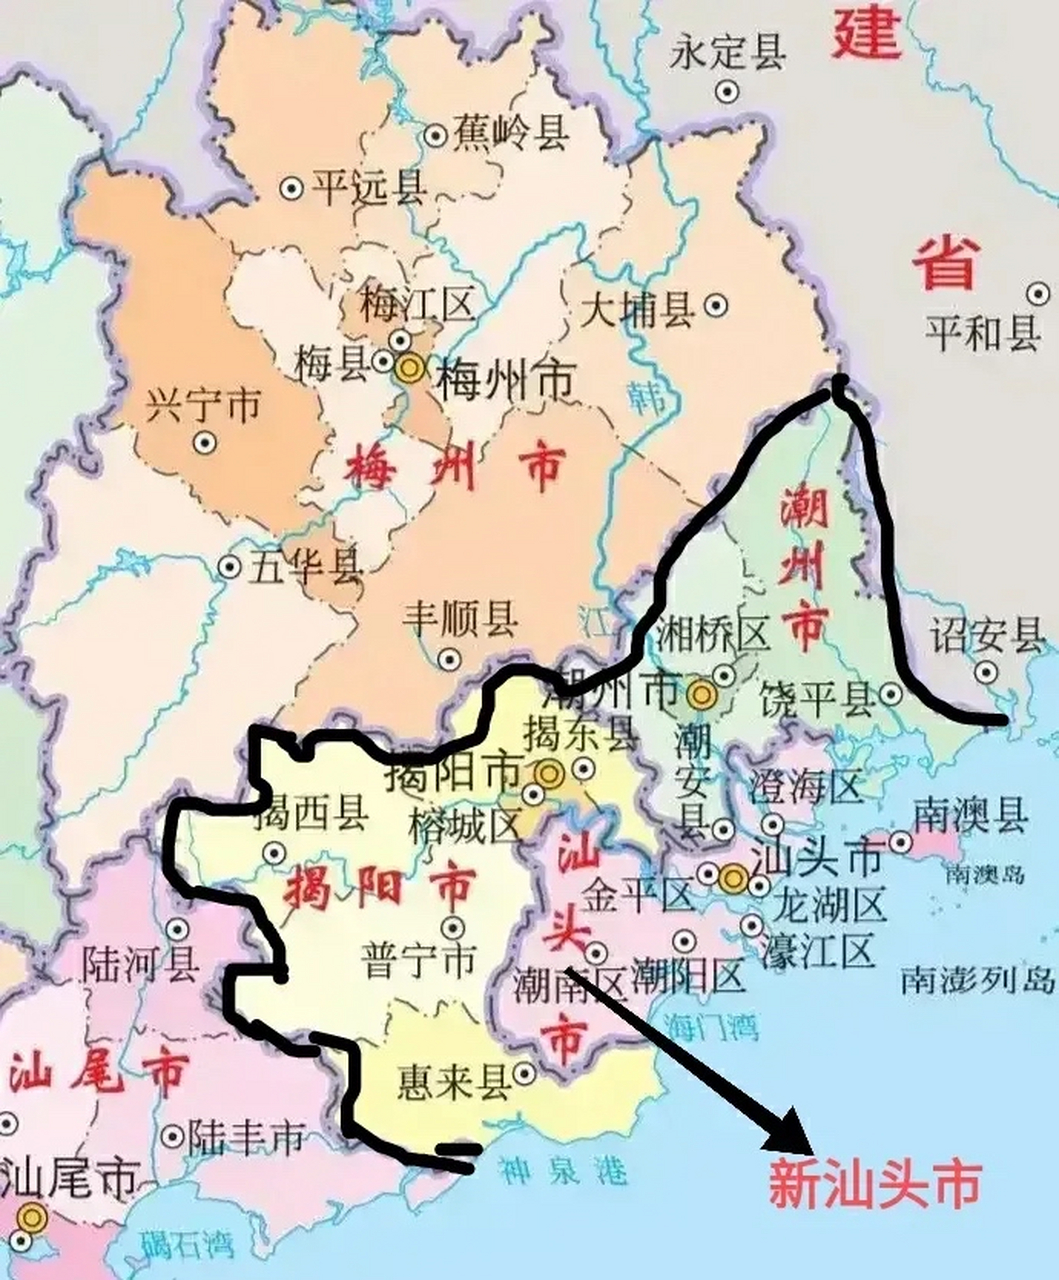 将潮汕地区的潮州,揭阳,汕头三市合并,是解决潮汕地区经济持续落后最